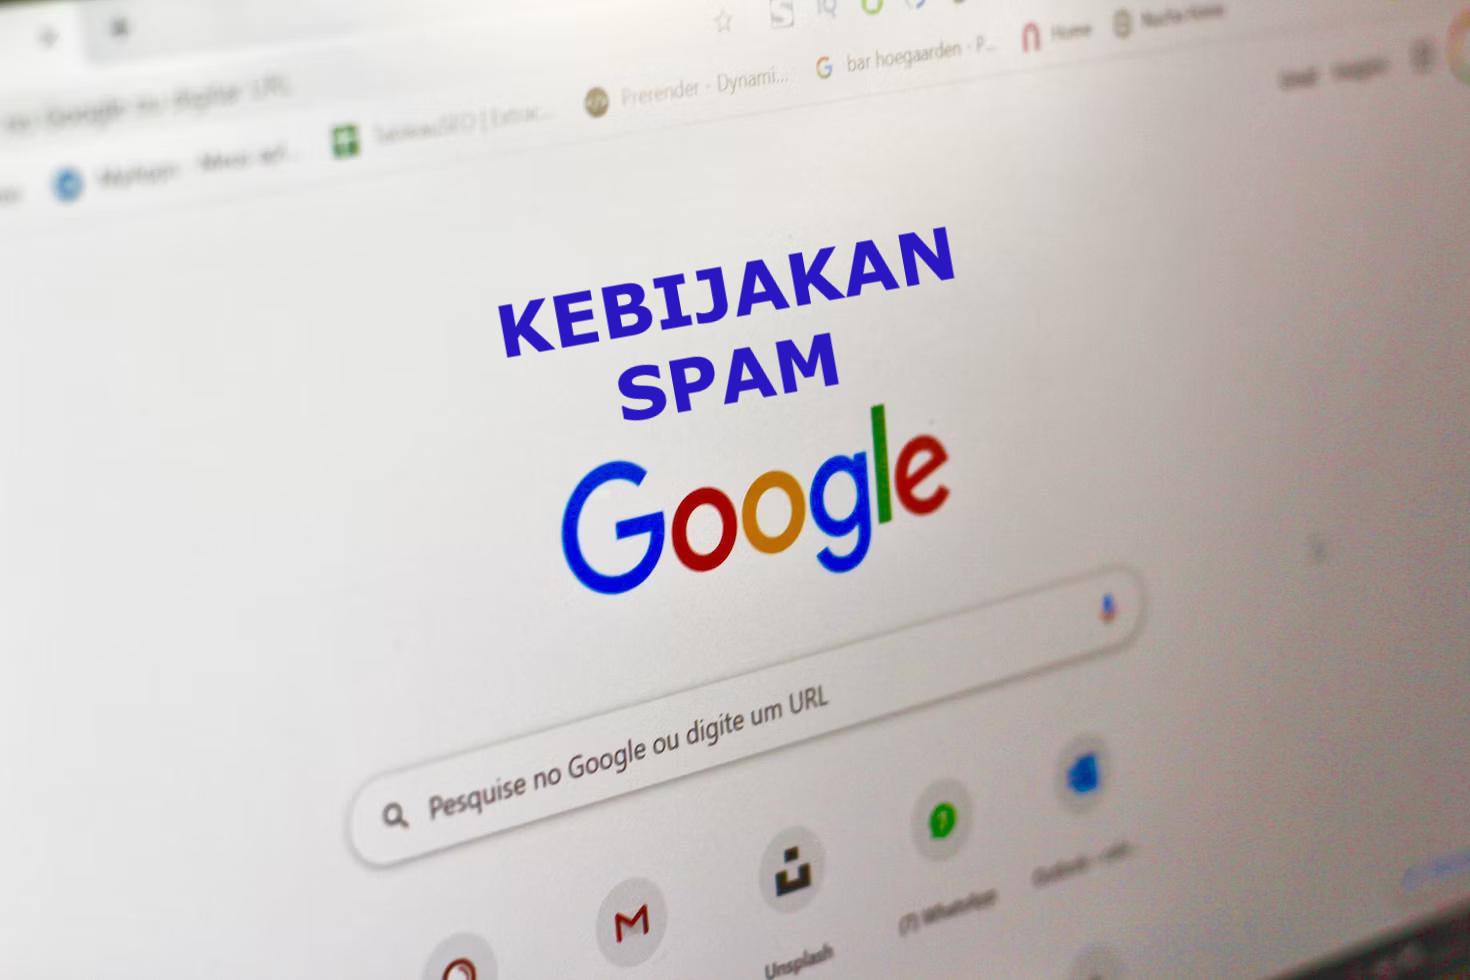 Kebijakan Spam Google